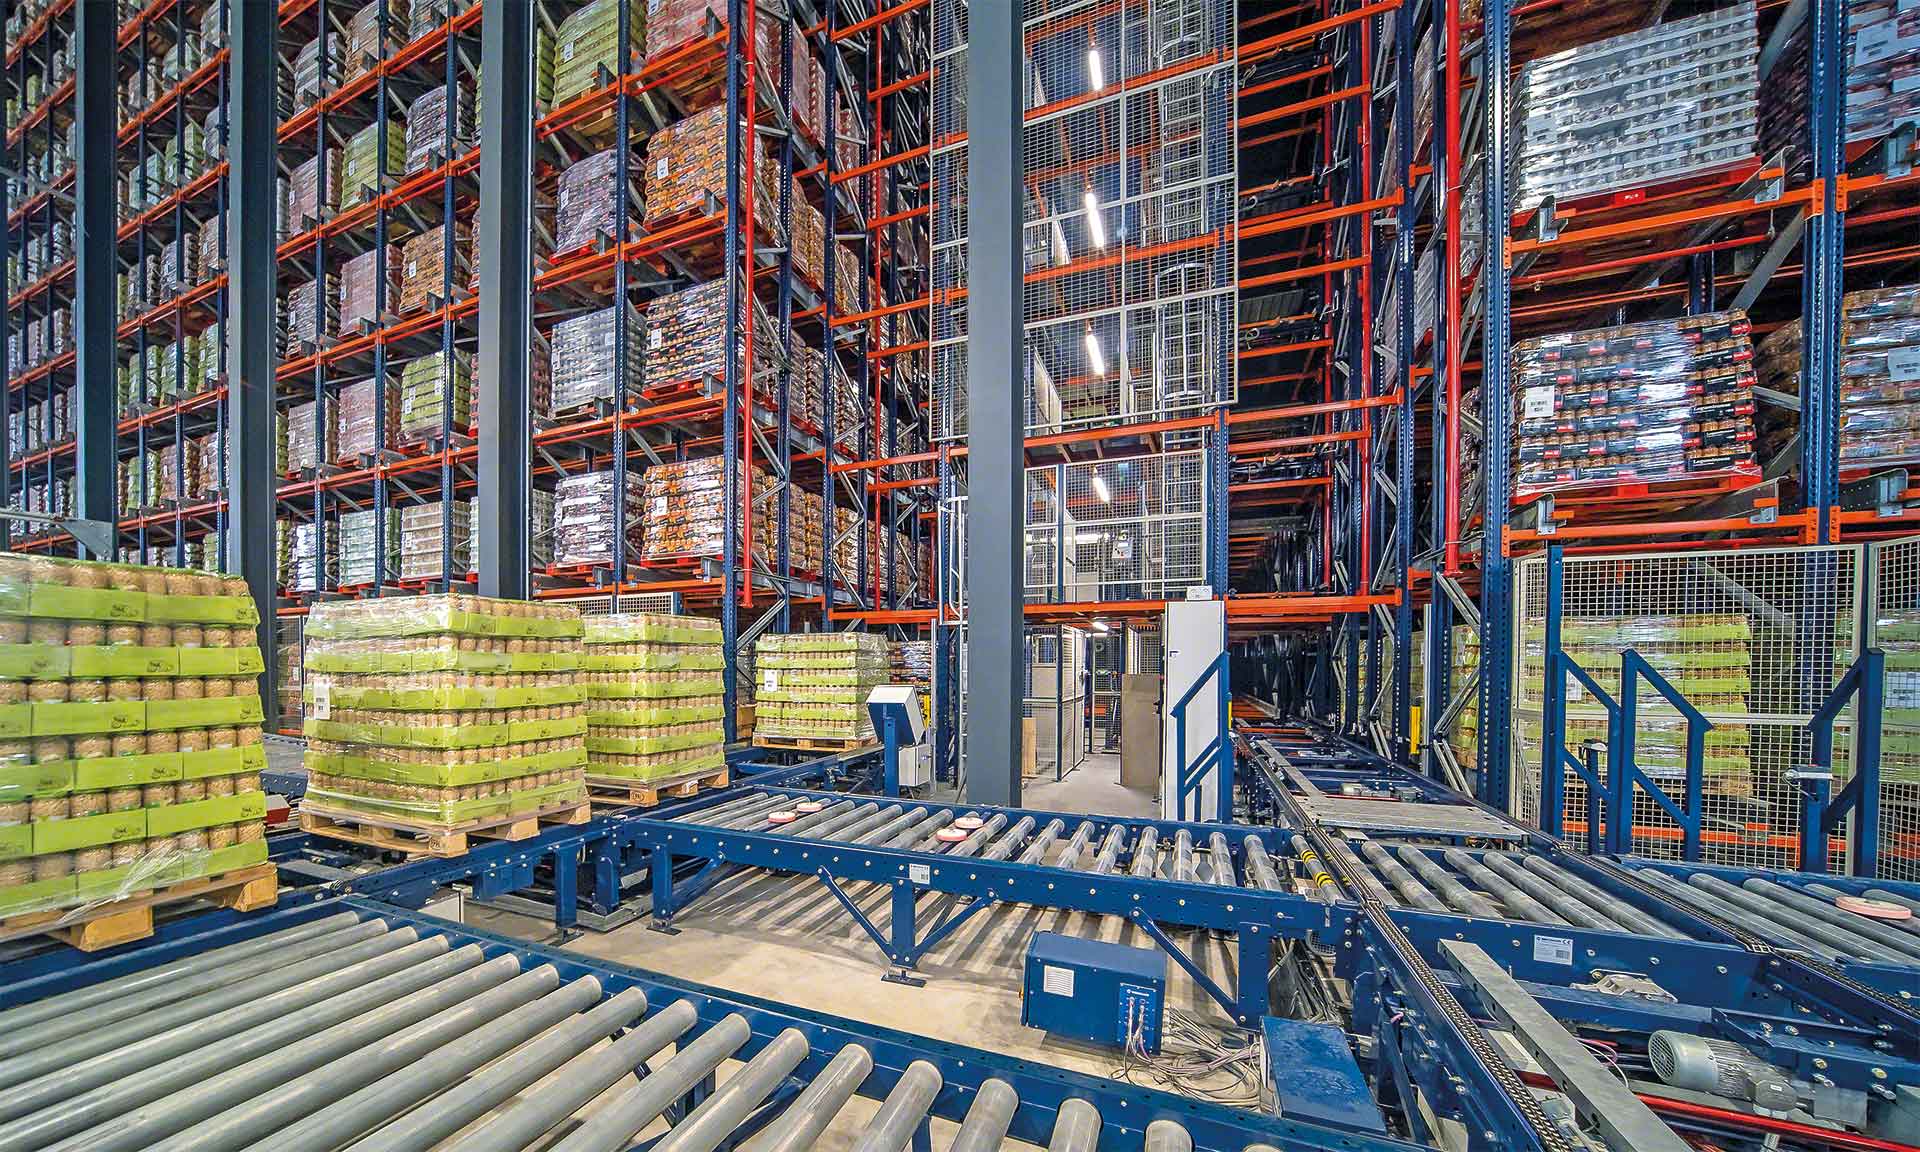 Le soluzioni per l'automazione del magazzino usano la tecnologia più avanzata per ottimizzare i processi logistici e produttivi